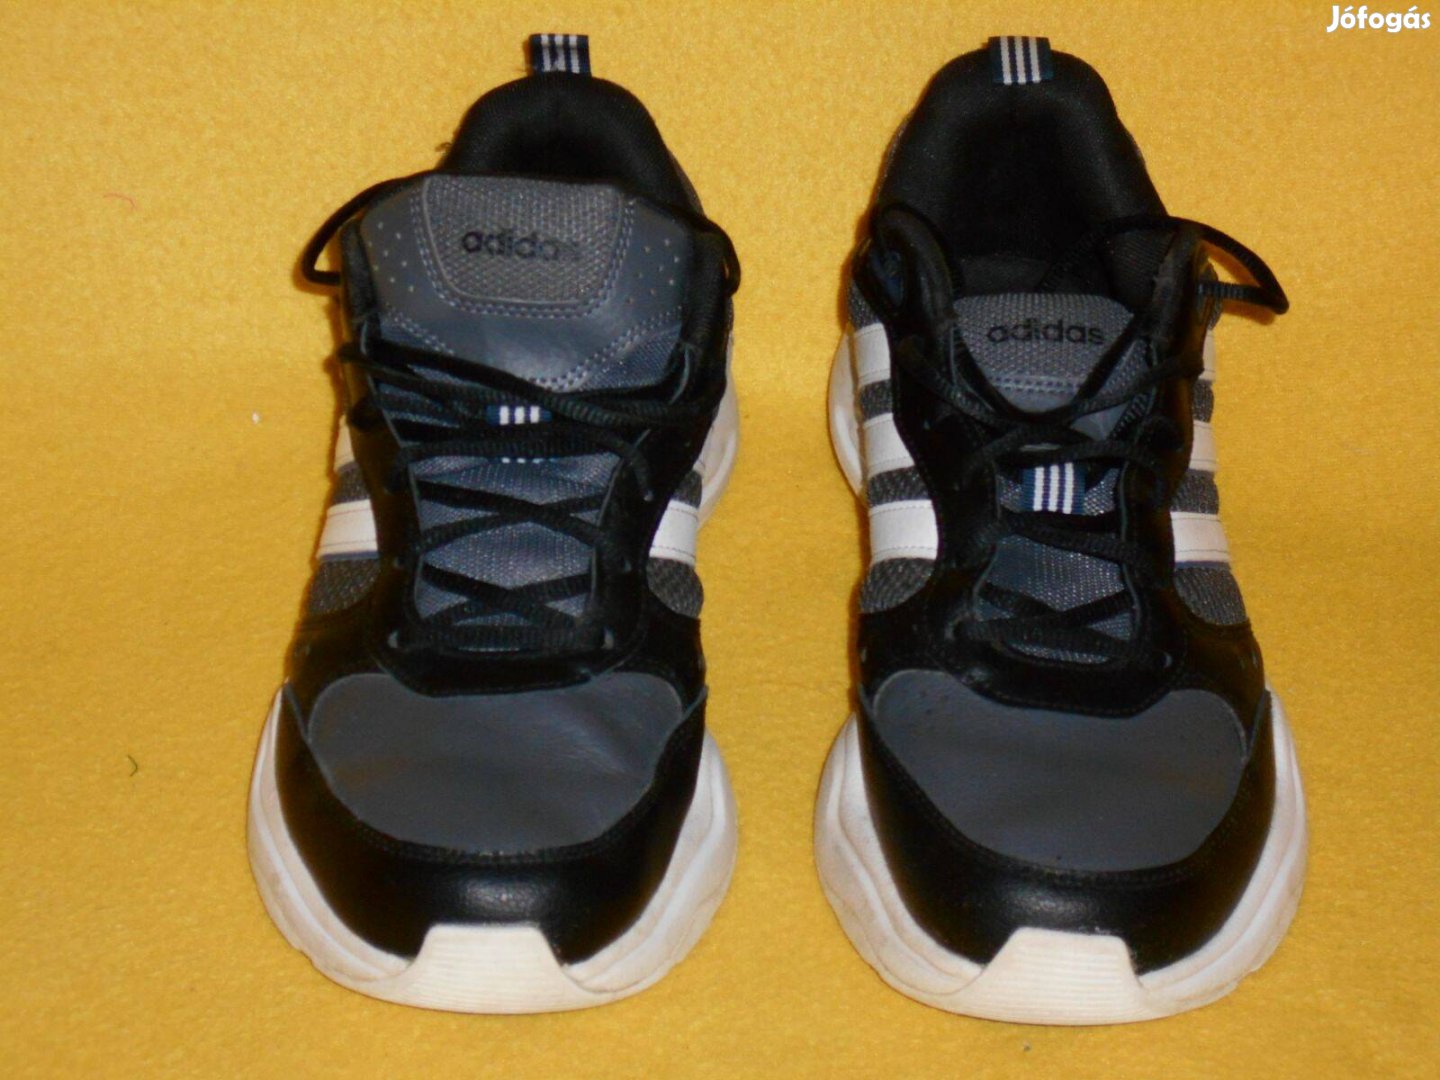 Adidas férfi cipő 44, 2/3 -os. Fekete, bőr - szinte új. 29000 Ft volt